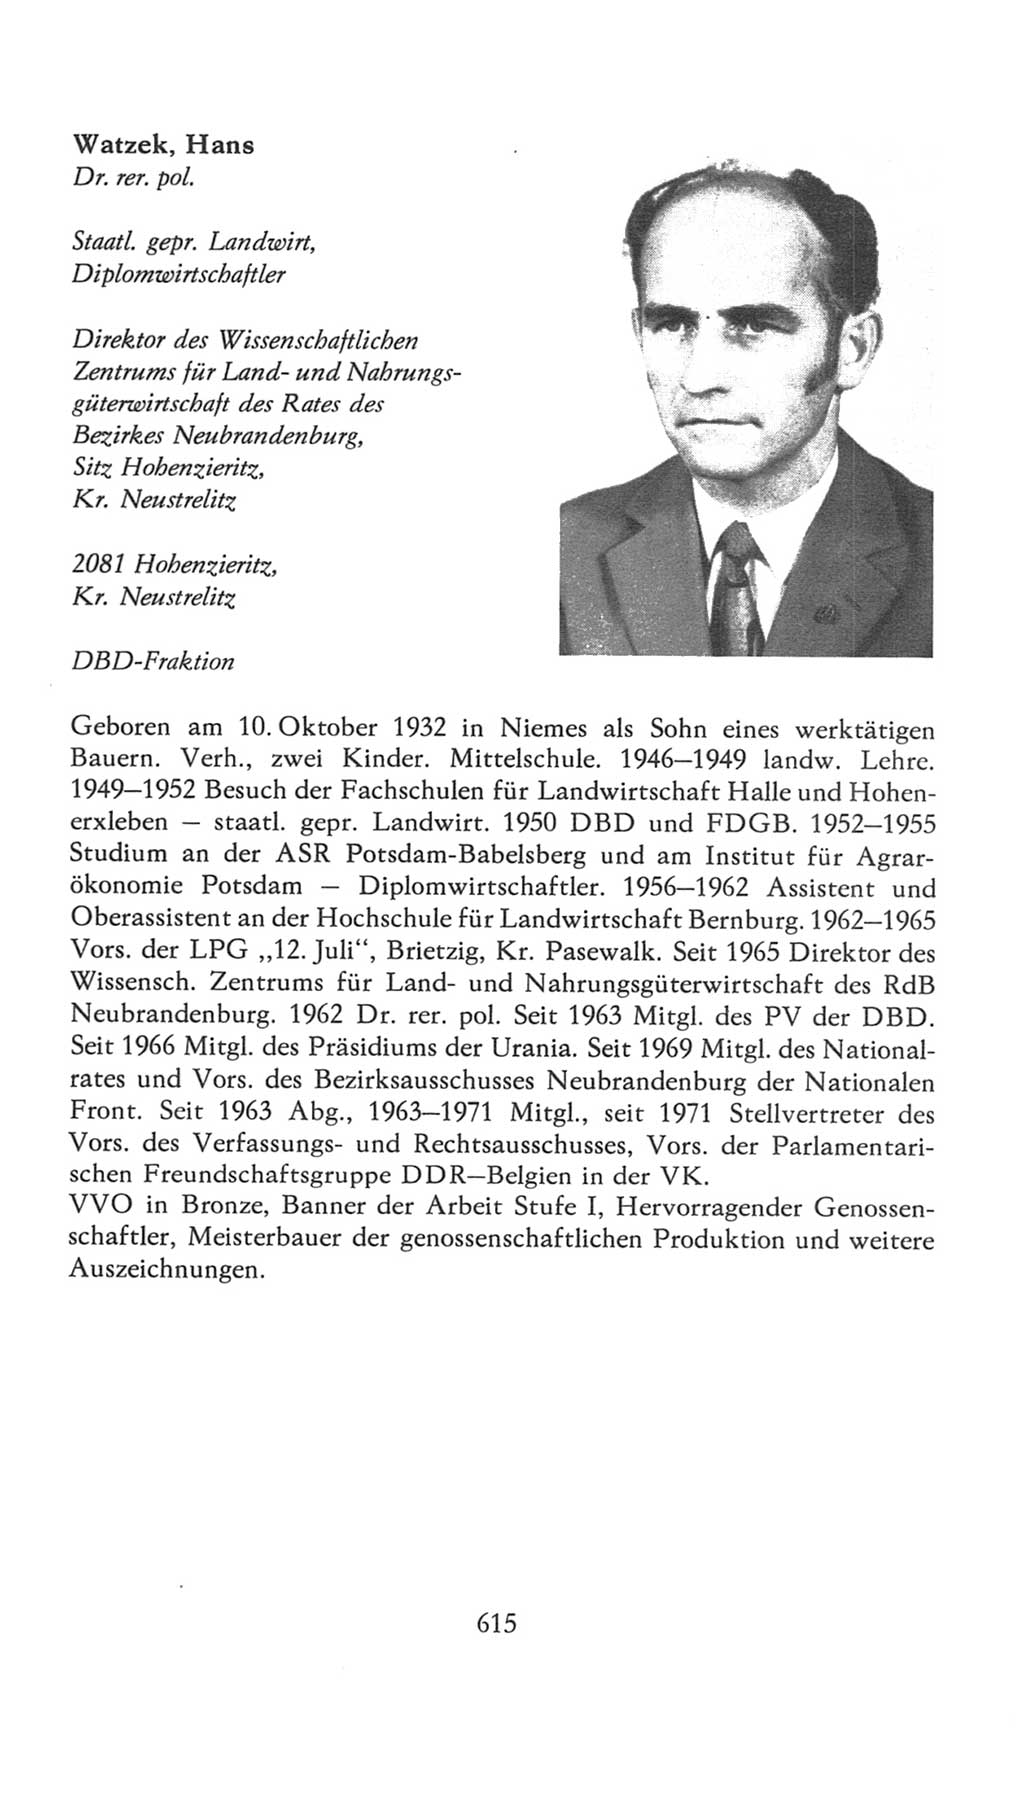 Volkskammer (VK) der Deutschen Demokratischen Republik (DDR), 7. Wahlperiode 1976-1981, Seite 615 (VK. DDR 7. WP. 1976-1981, S. 615)